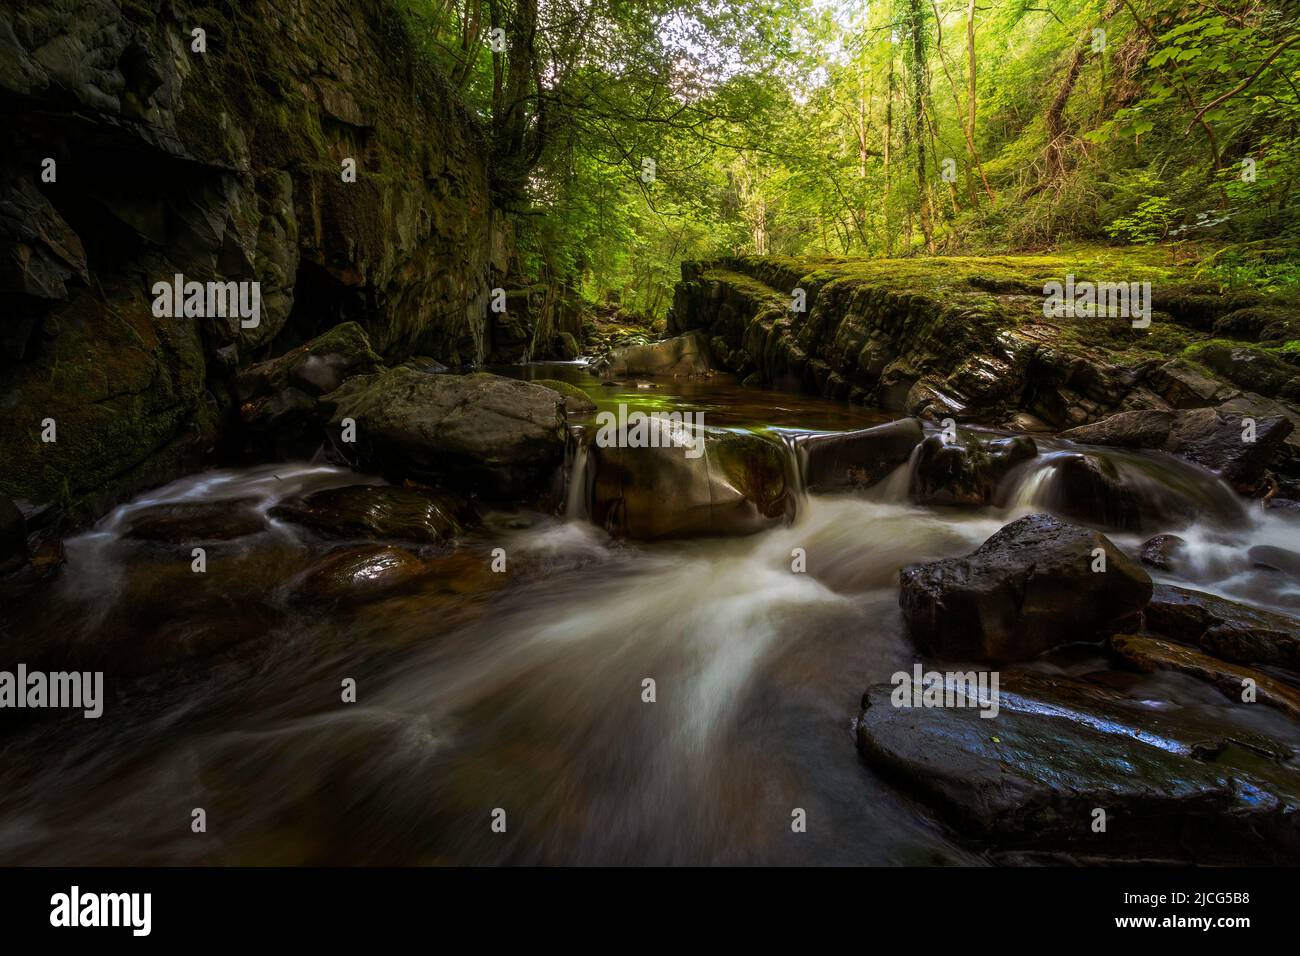 Petites cascades et rochers lisses sur la rivière Afon Pyrddin près de Pontneddfechan, pays de Galles du Sud, Royaume-Uni, connu sous le nom de Waterfall Country Banque D'Images